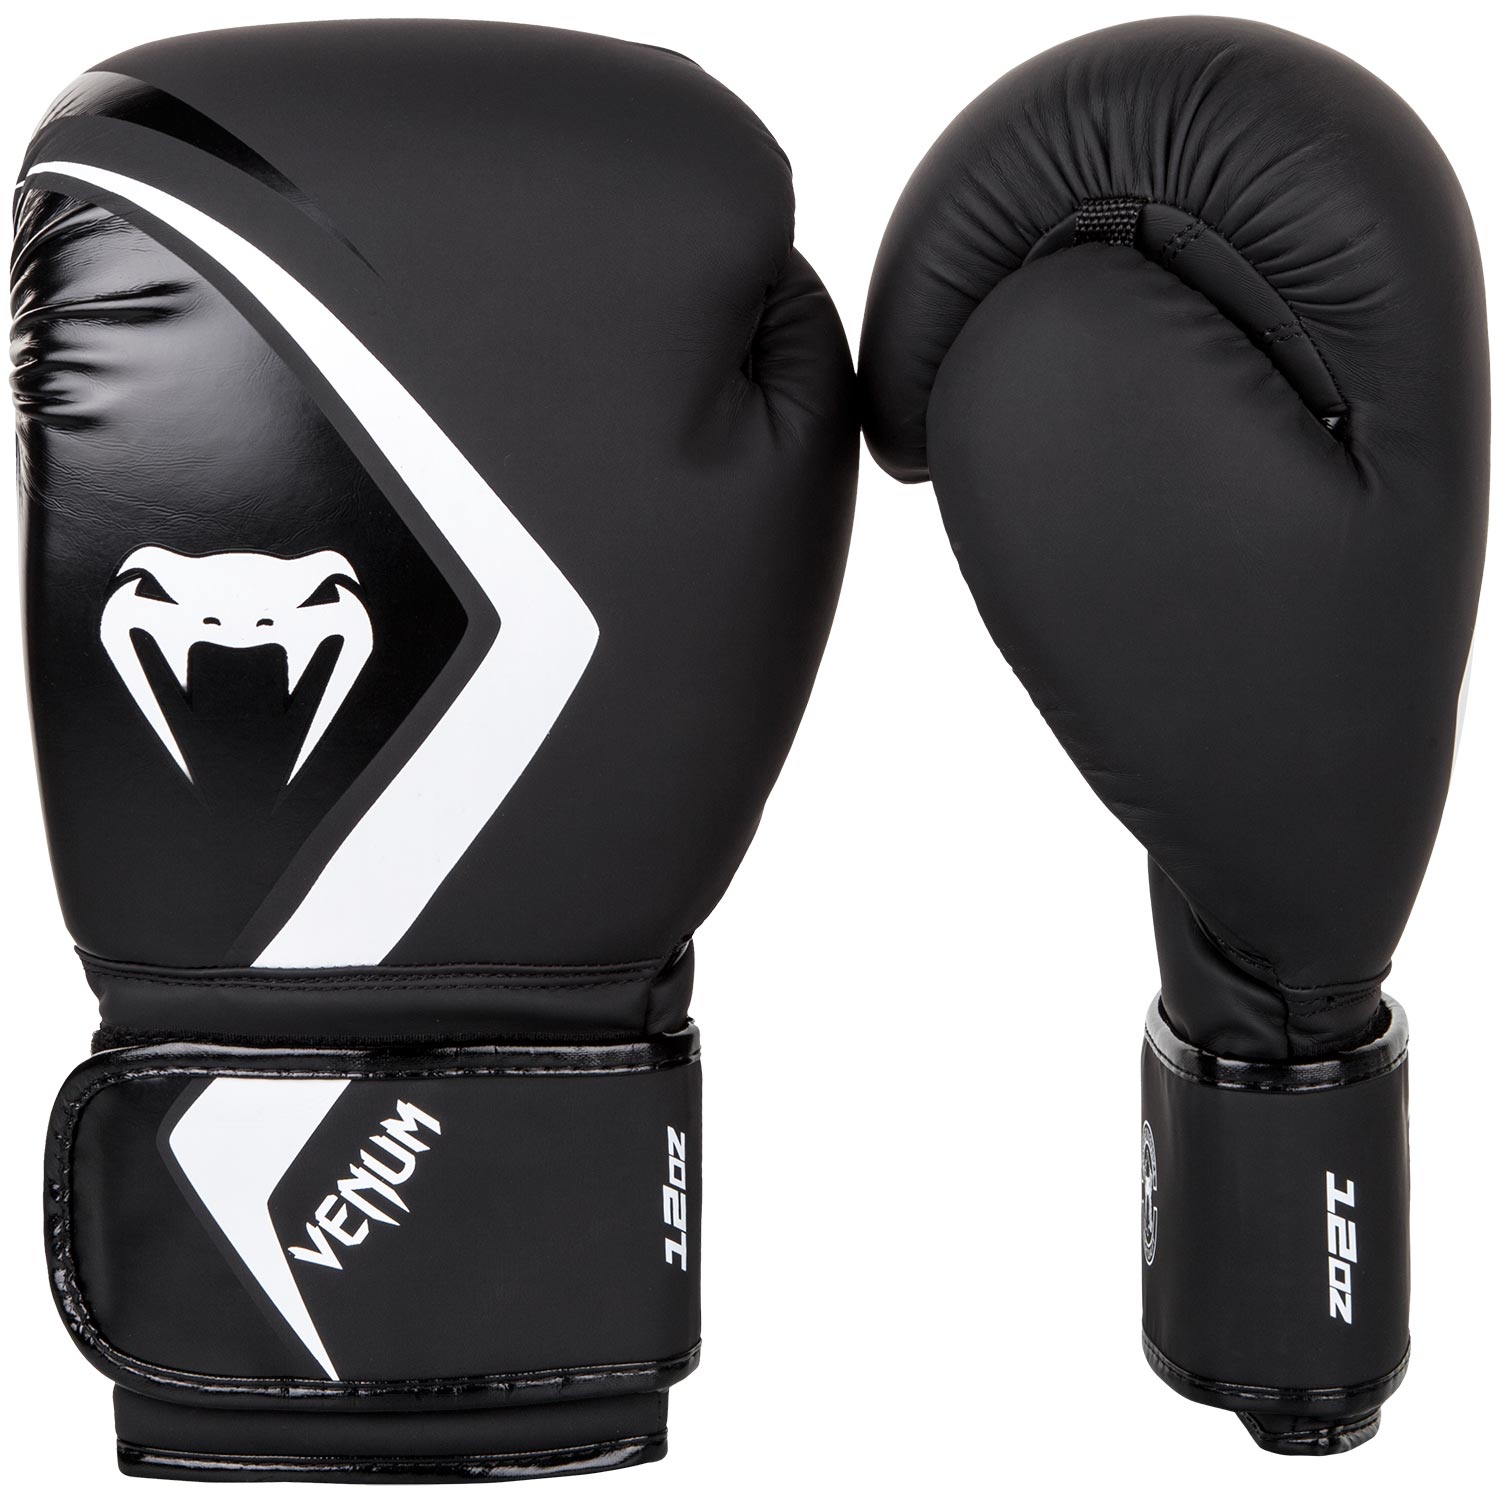 Boxerské rukavice Contender 2.0 černé/šedo-bílé VENUM vel. 10 oz